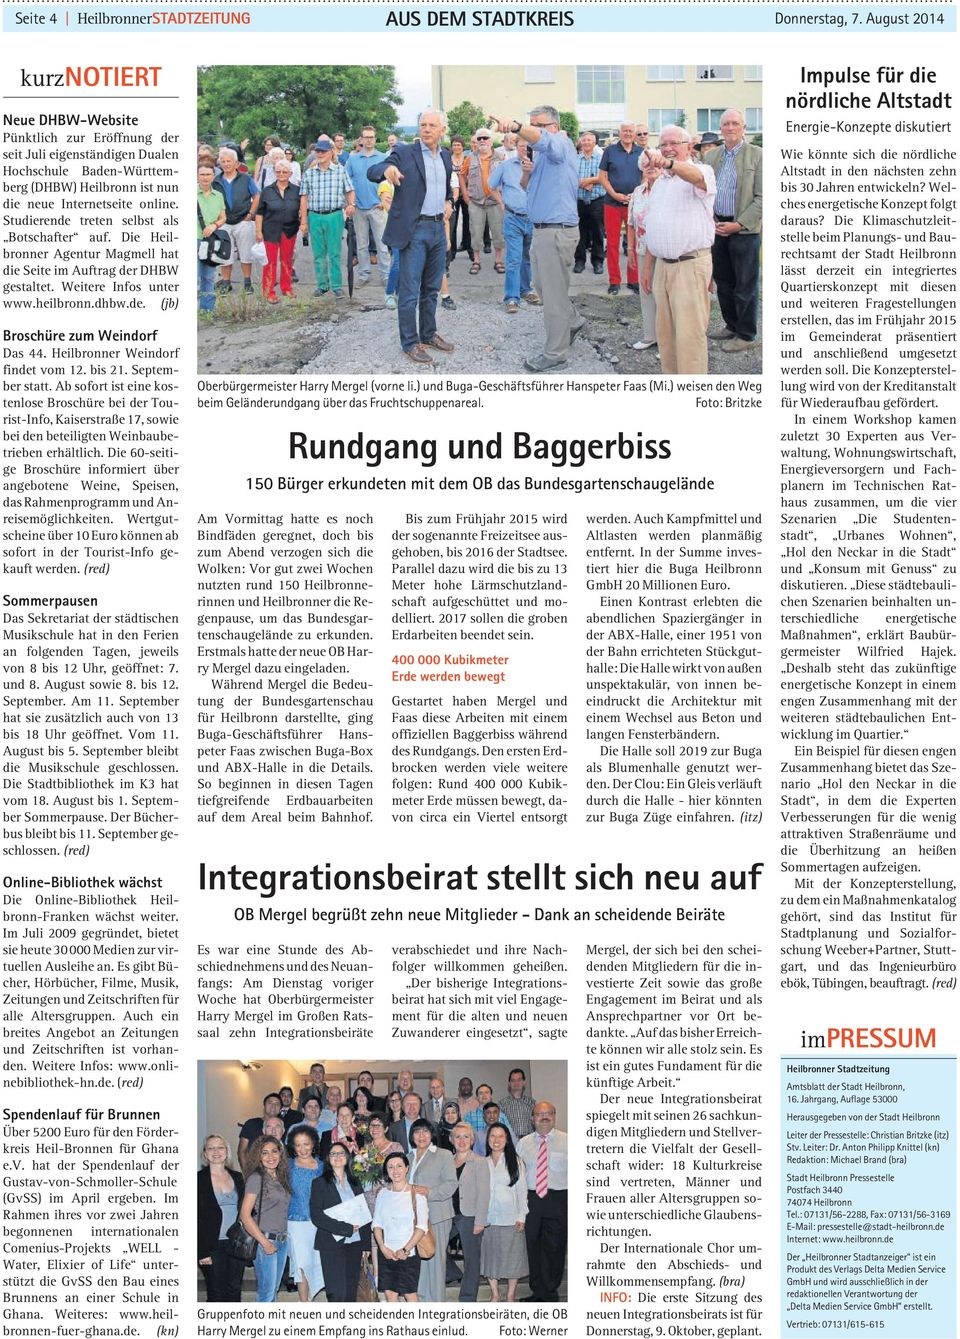 Studierende treten selbst als Botschafter auf. Die Heilbronner Agentur Magmell hat die Seite im Auftrag der DHBW gestaltet. Weitere Infos unter www.heilbronn.dhbw.de. (jb) Broschüre zum Weindorf Das 44.